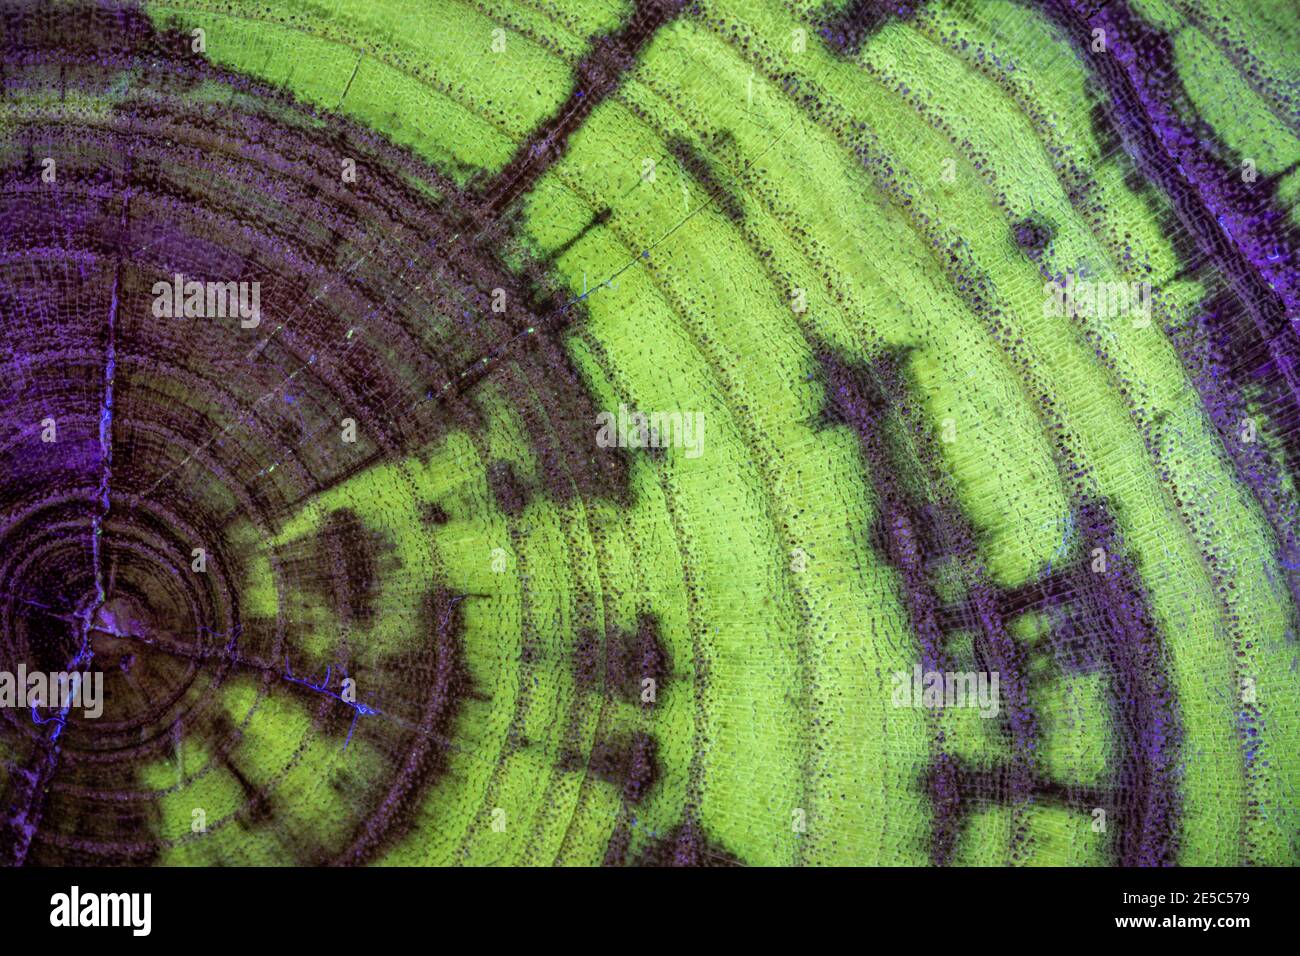 Le grain de bois de criquet noir sous la lumière UV, affichant une fluorescence verte caractéristique. Banque D'Images